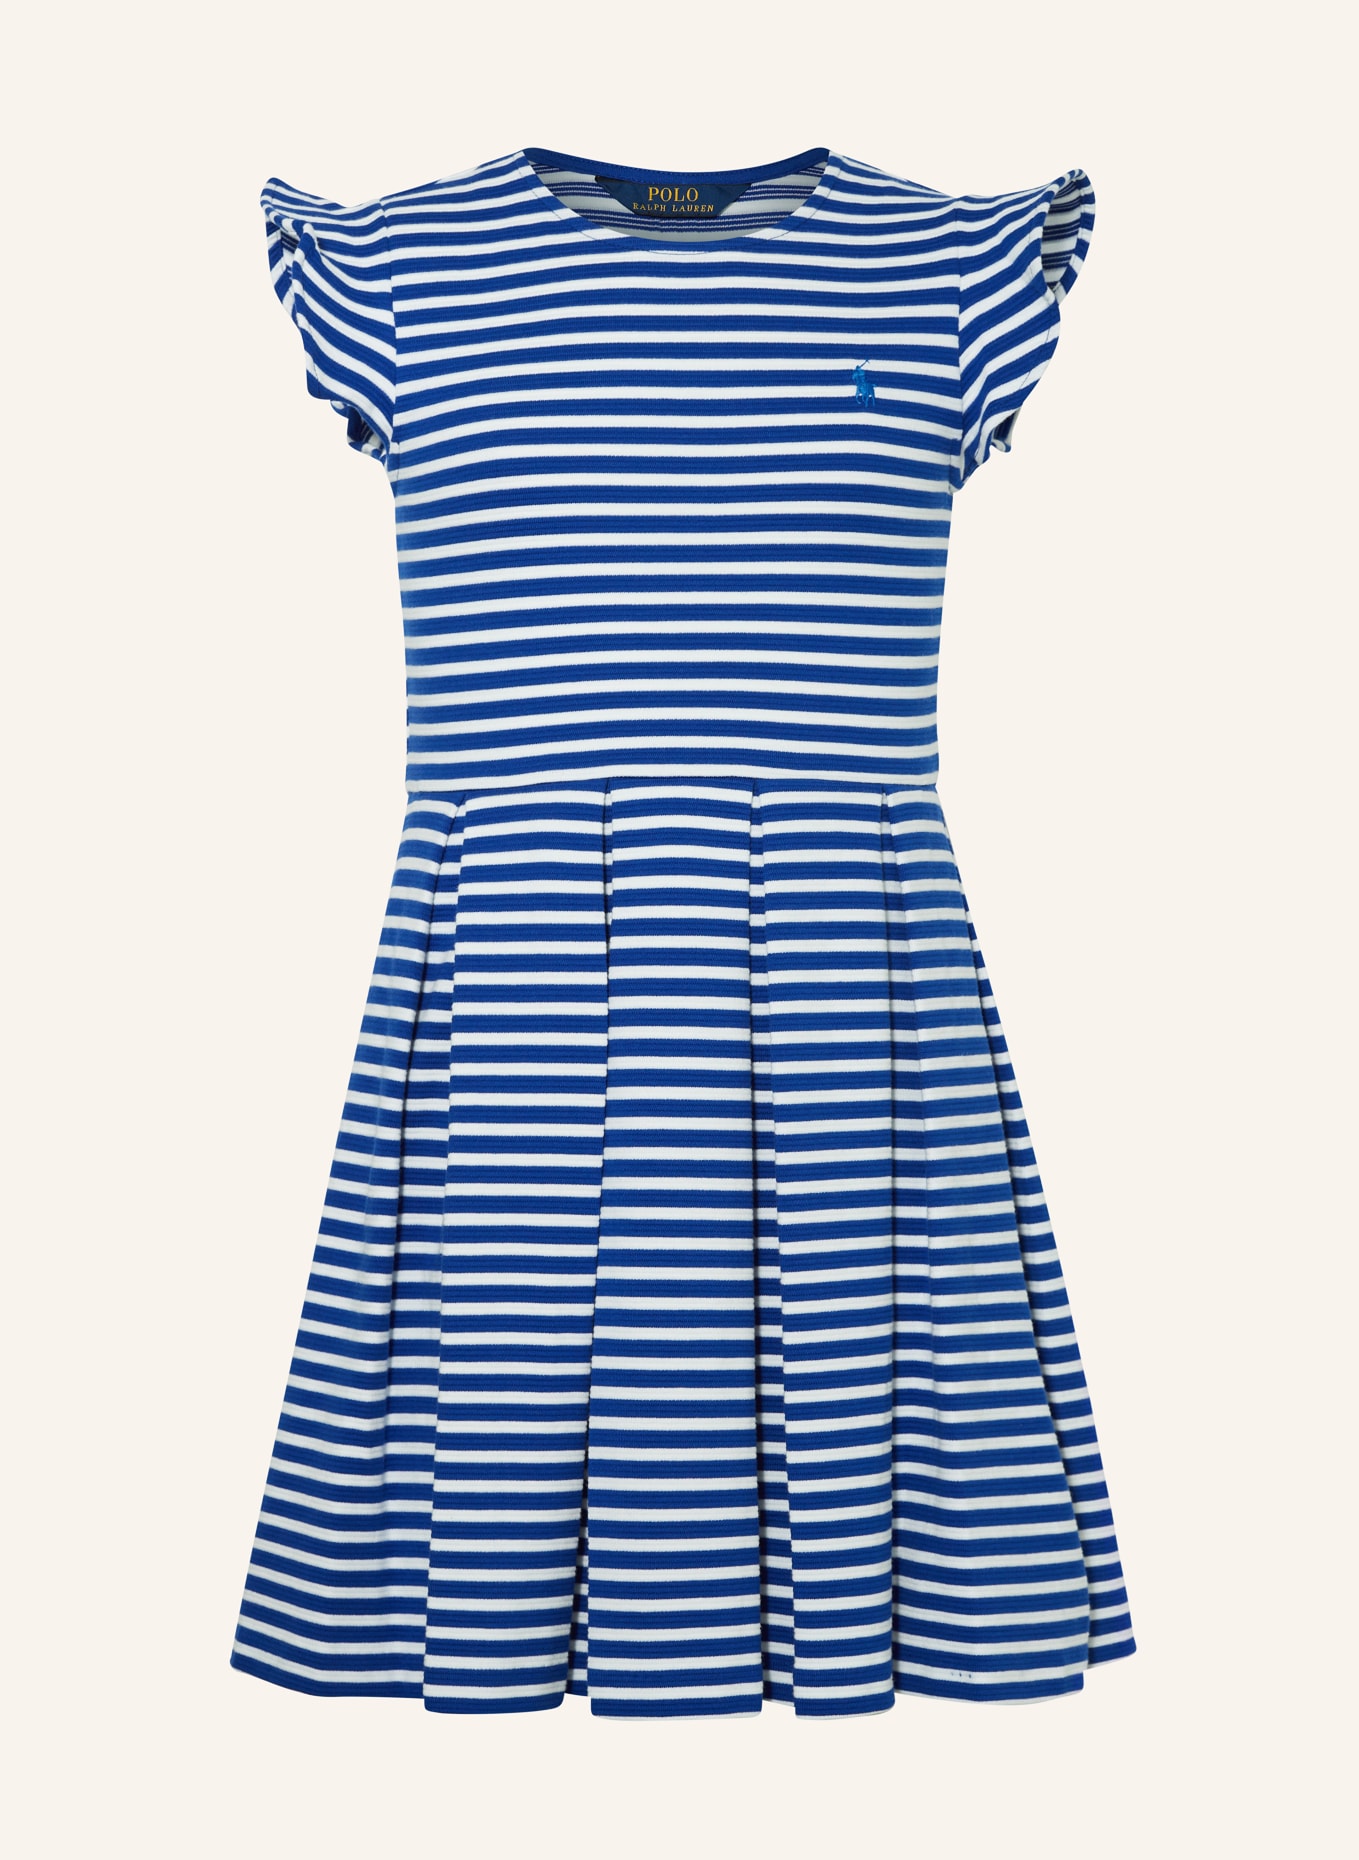 POLO RALPH LAUREN Kleid, Farbe: BLAU/ WEISS (Bild 1)